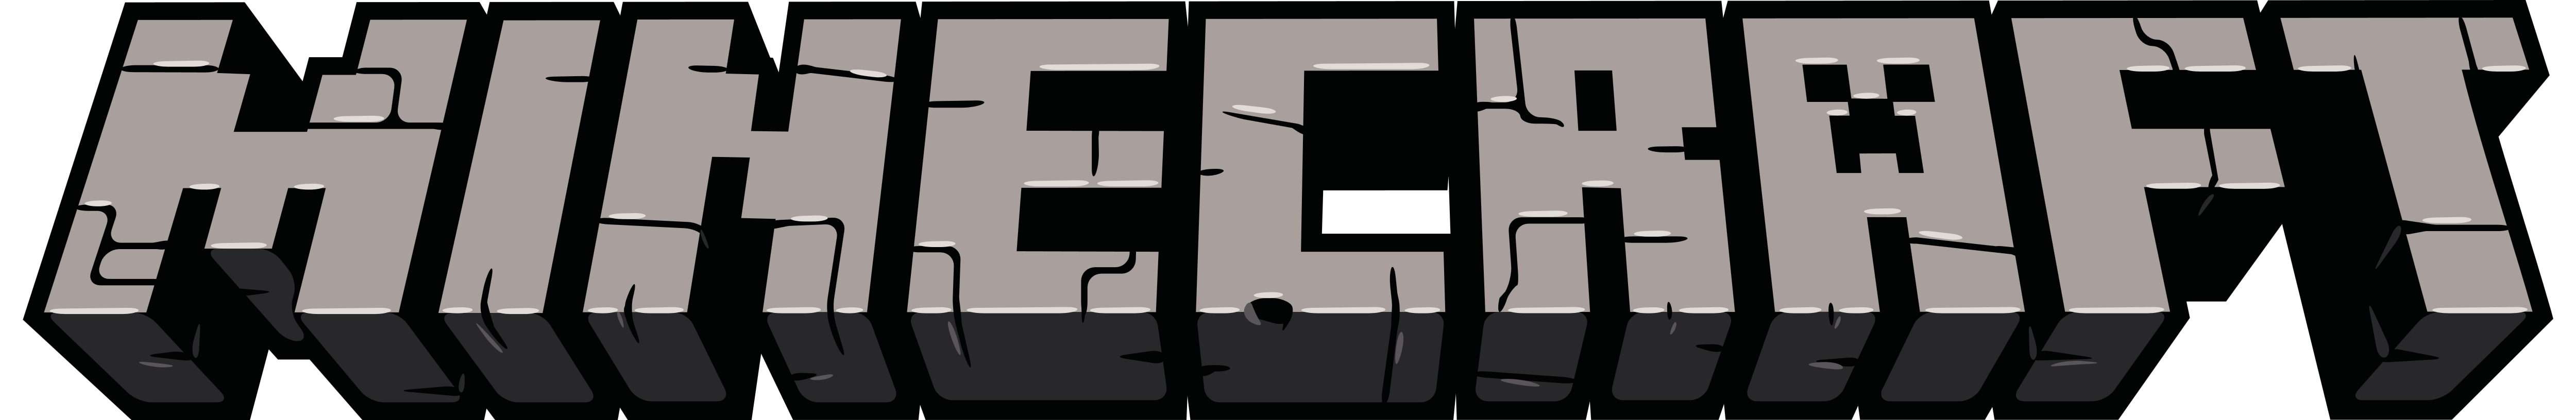 Minecraft Logo Logodix